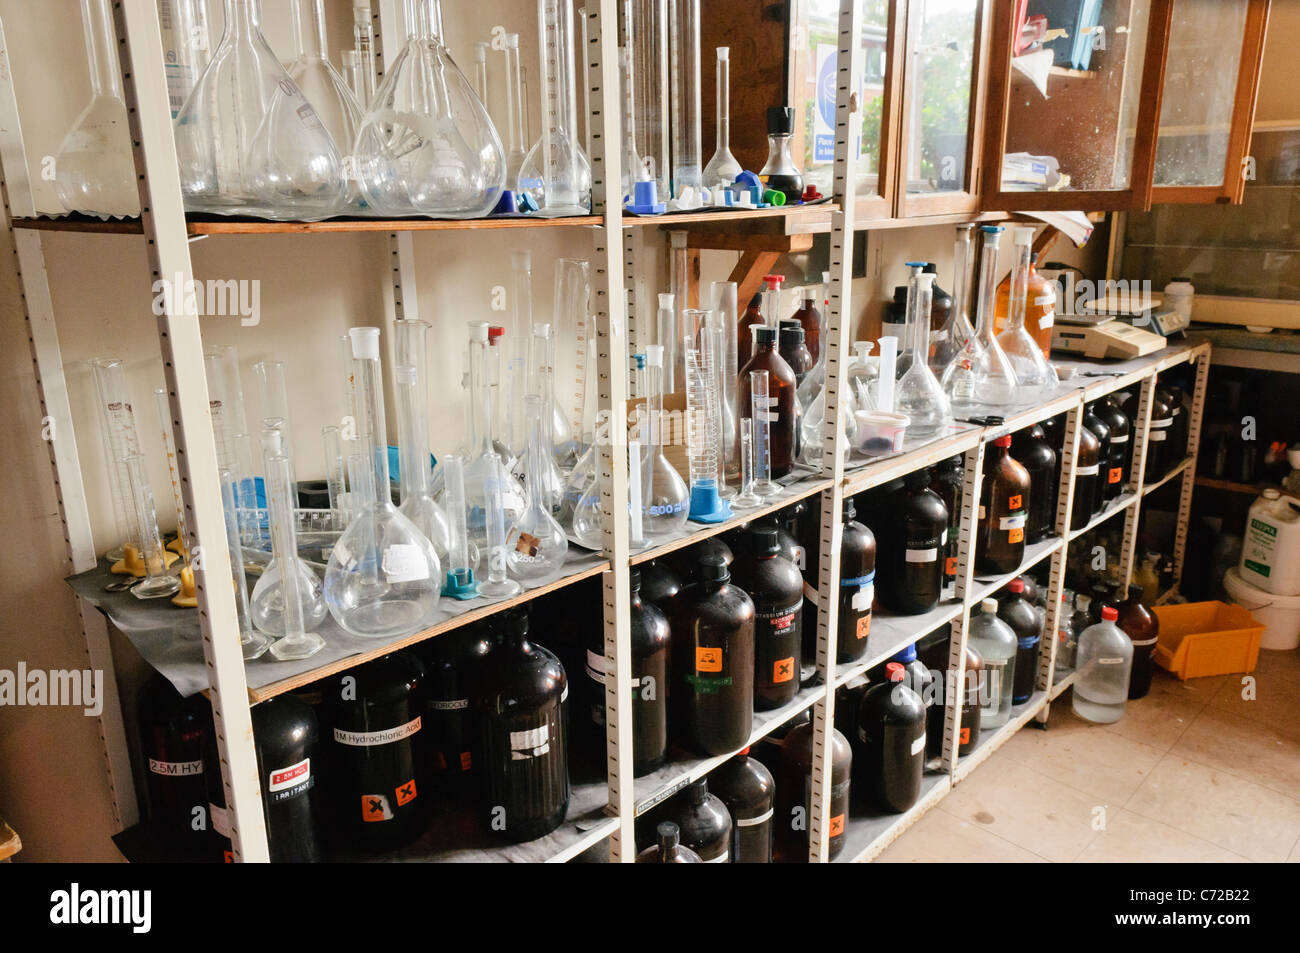 Los productos químicos en los estantes de una escuela laboratorio de química Foto de stock